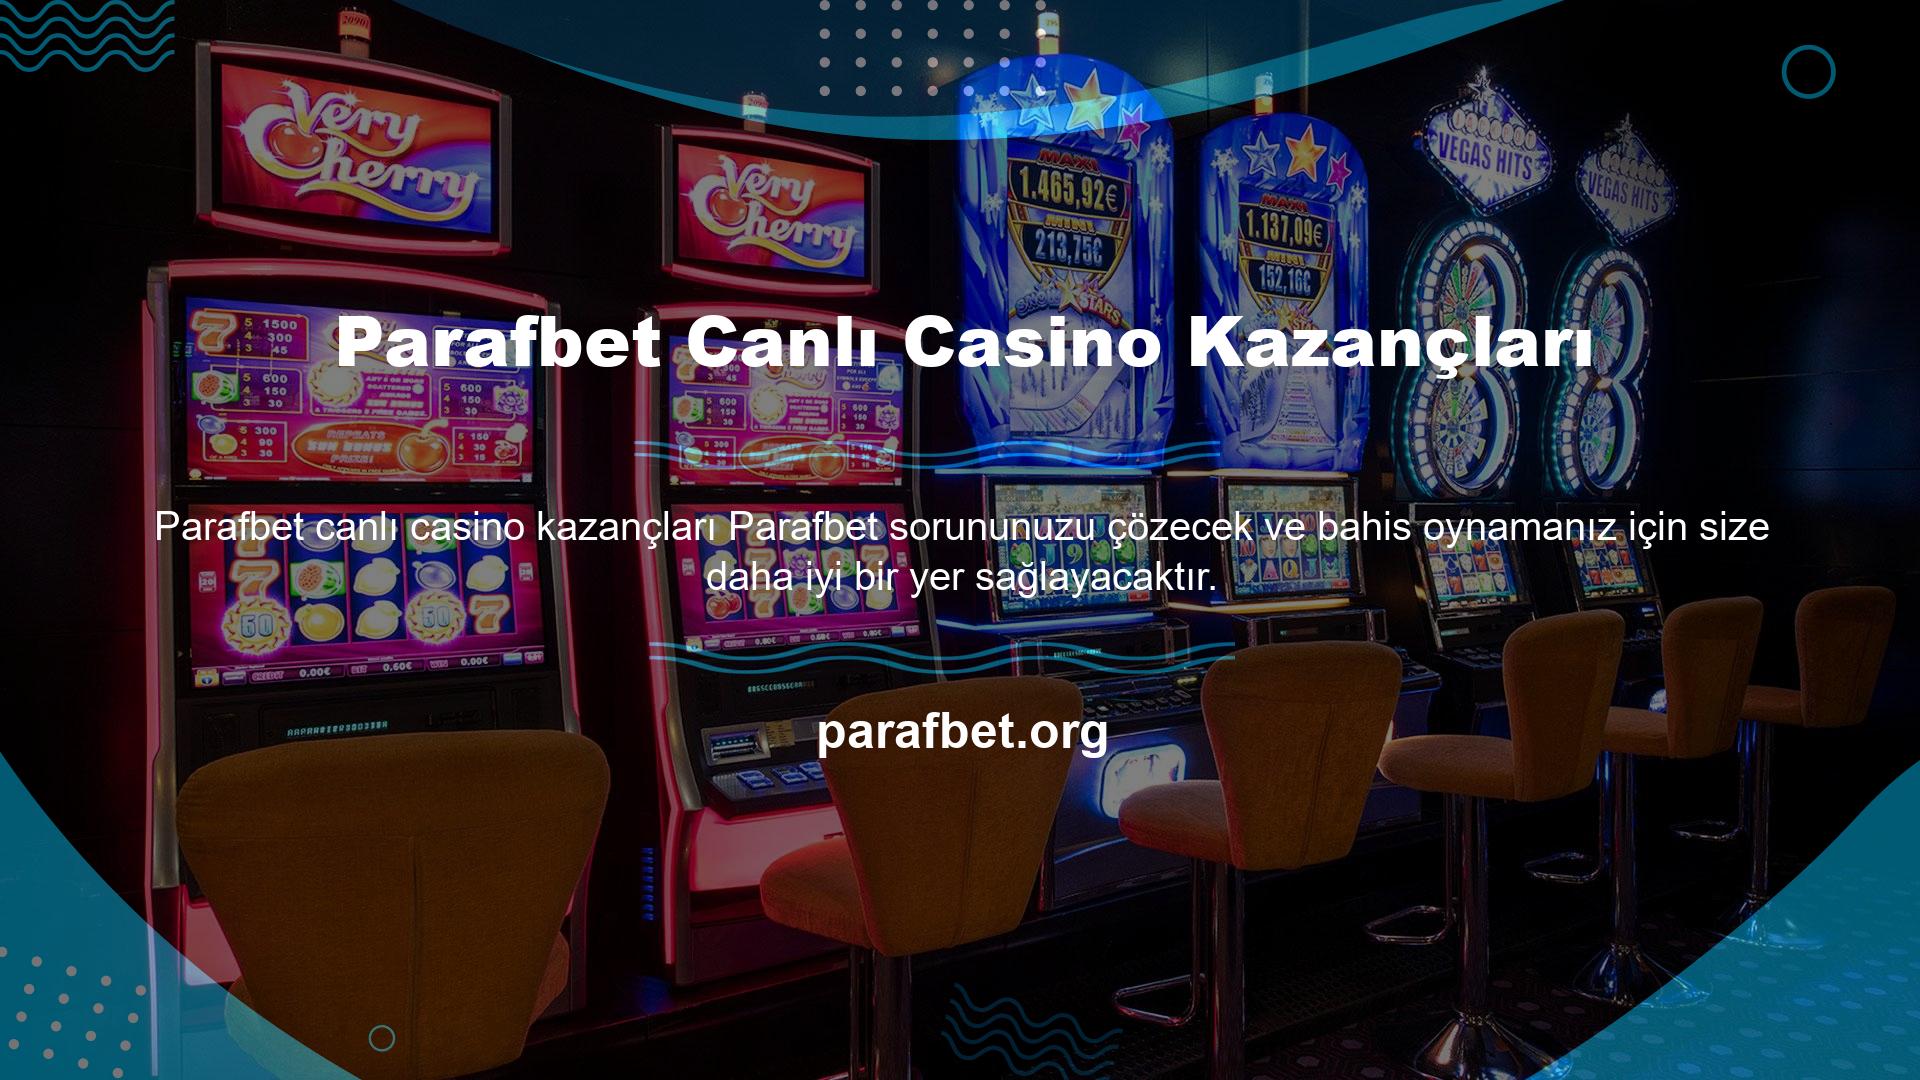 Bahis tutkunlarının en çok sevdiği özelliklerden biri de Parafbet canlı casino kazandıran bahisler sunmasıdır